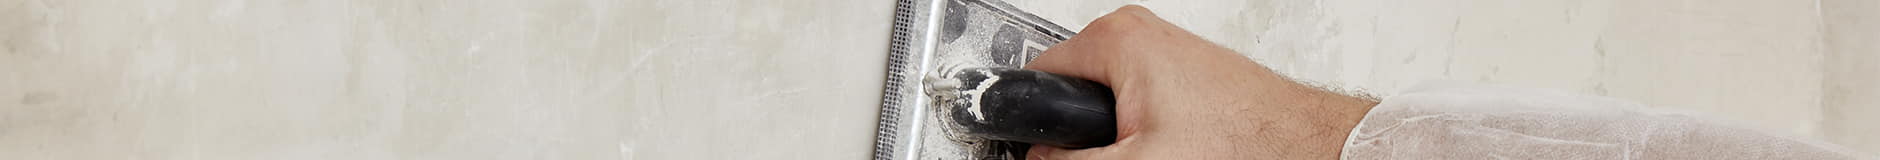 Anwendung von gebrauchsfertigem Mikrozement auf einer nicht begehbaren Oberfläche mit einem Spachtel